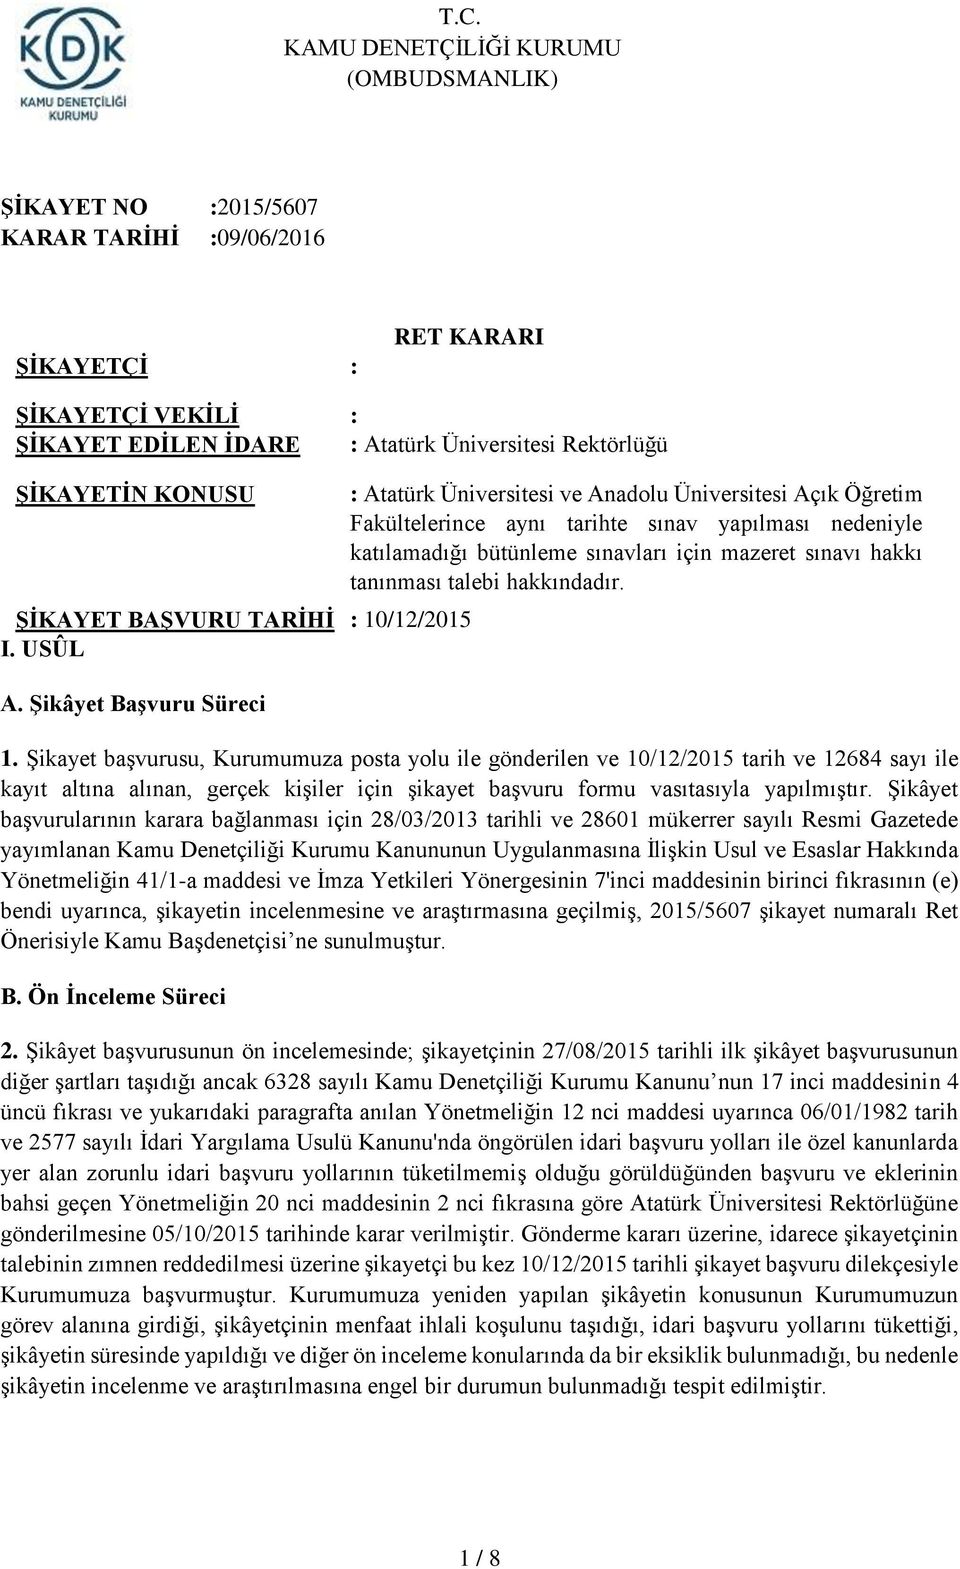 Şikâyet Başvuru Süreci : Atatürk Üniversitesi ve Anadolu Üniversitesi Açık Öğretim Fakültelerince aynı tarihte sınav yapılması nedeniyle katılamadığı bütünleme sınavları için mazeret sınavı hakkı